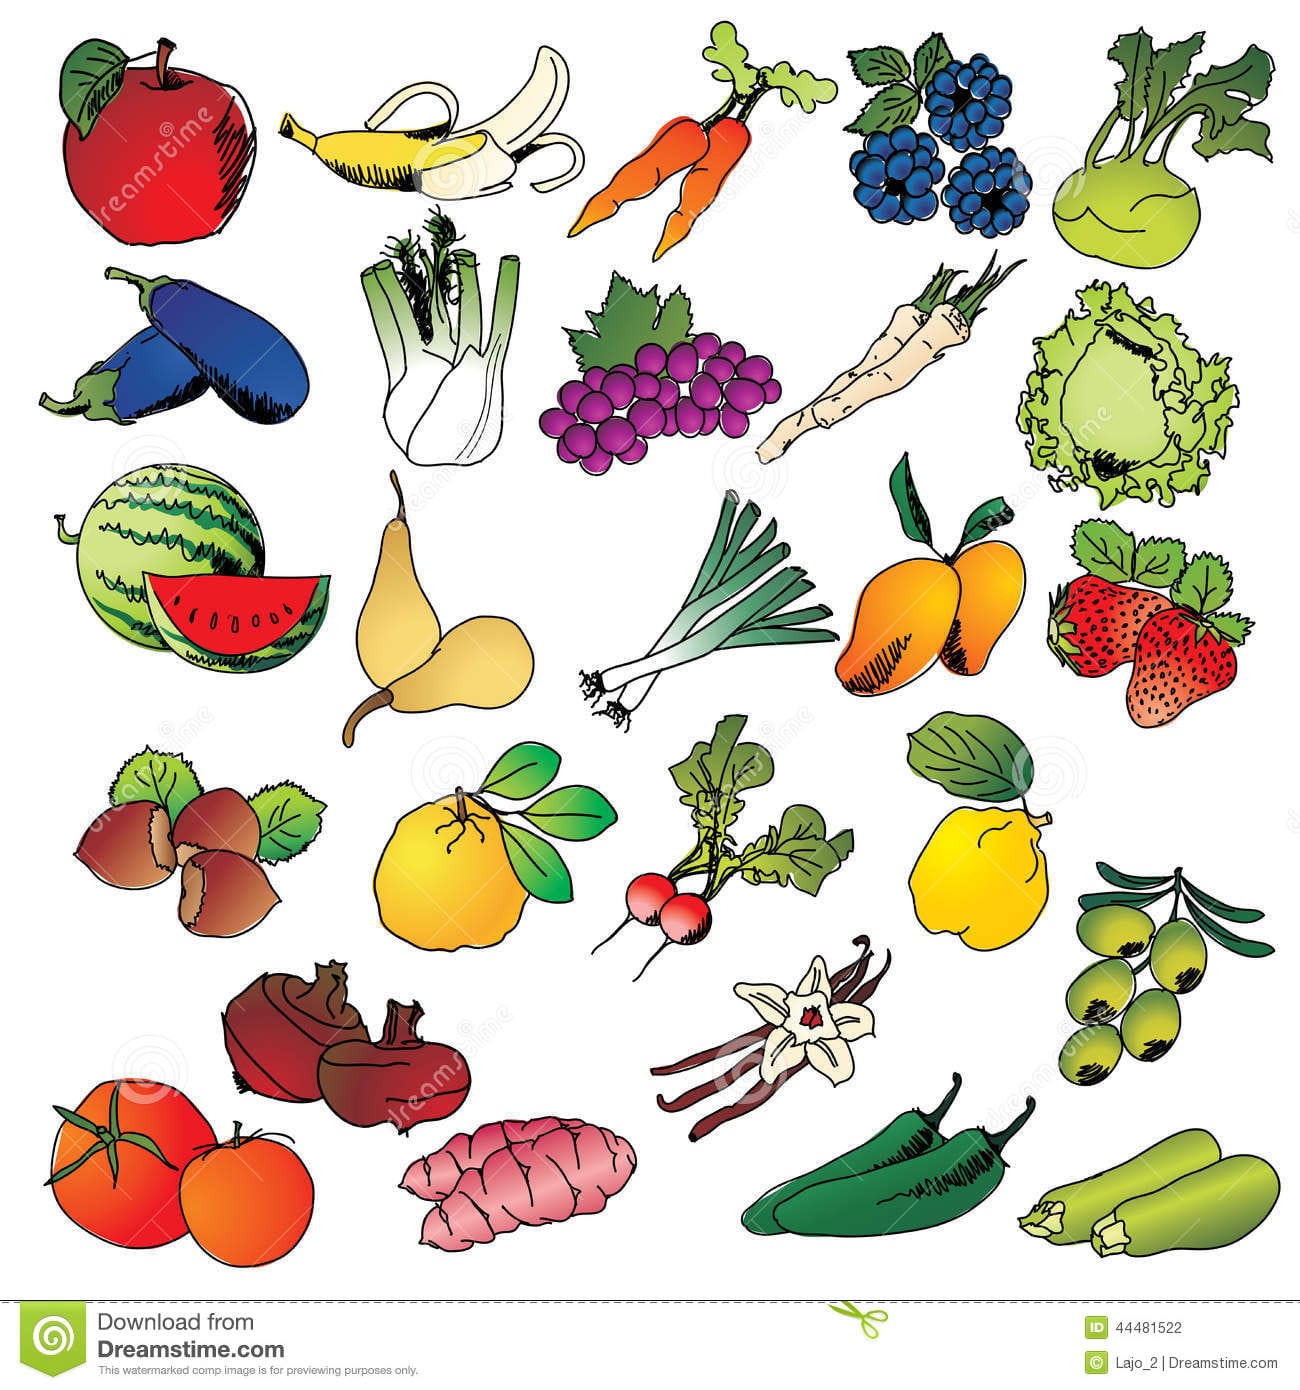 Frutas E Legumes Do Desenho A MÃ£o Livre Imagens De Stock